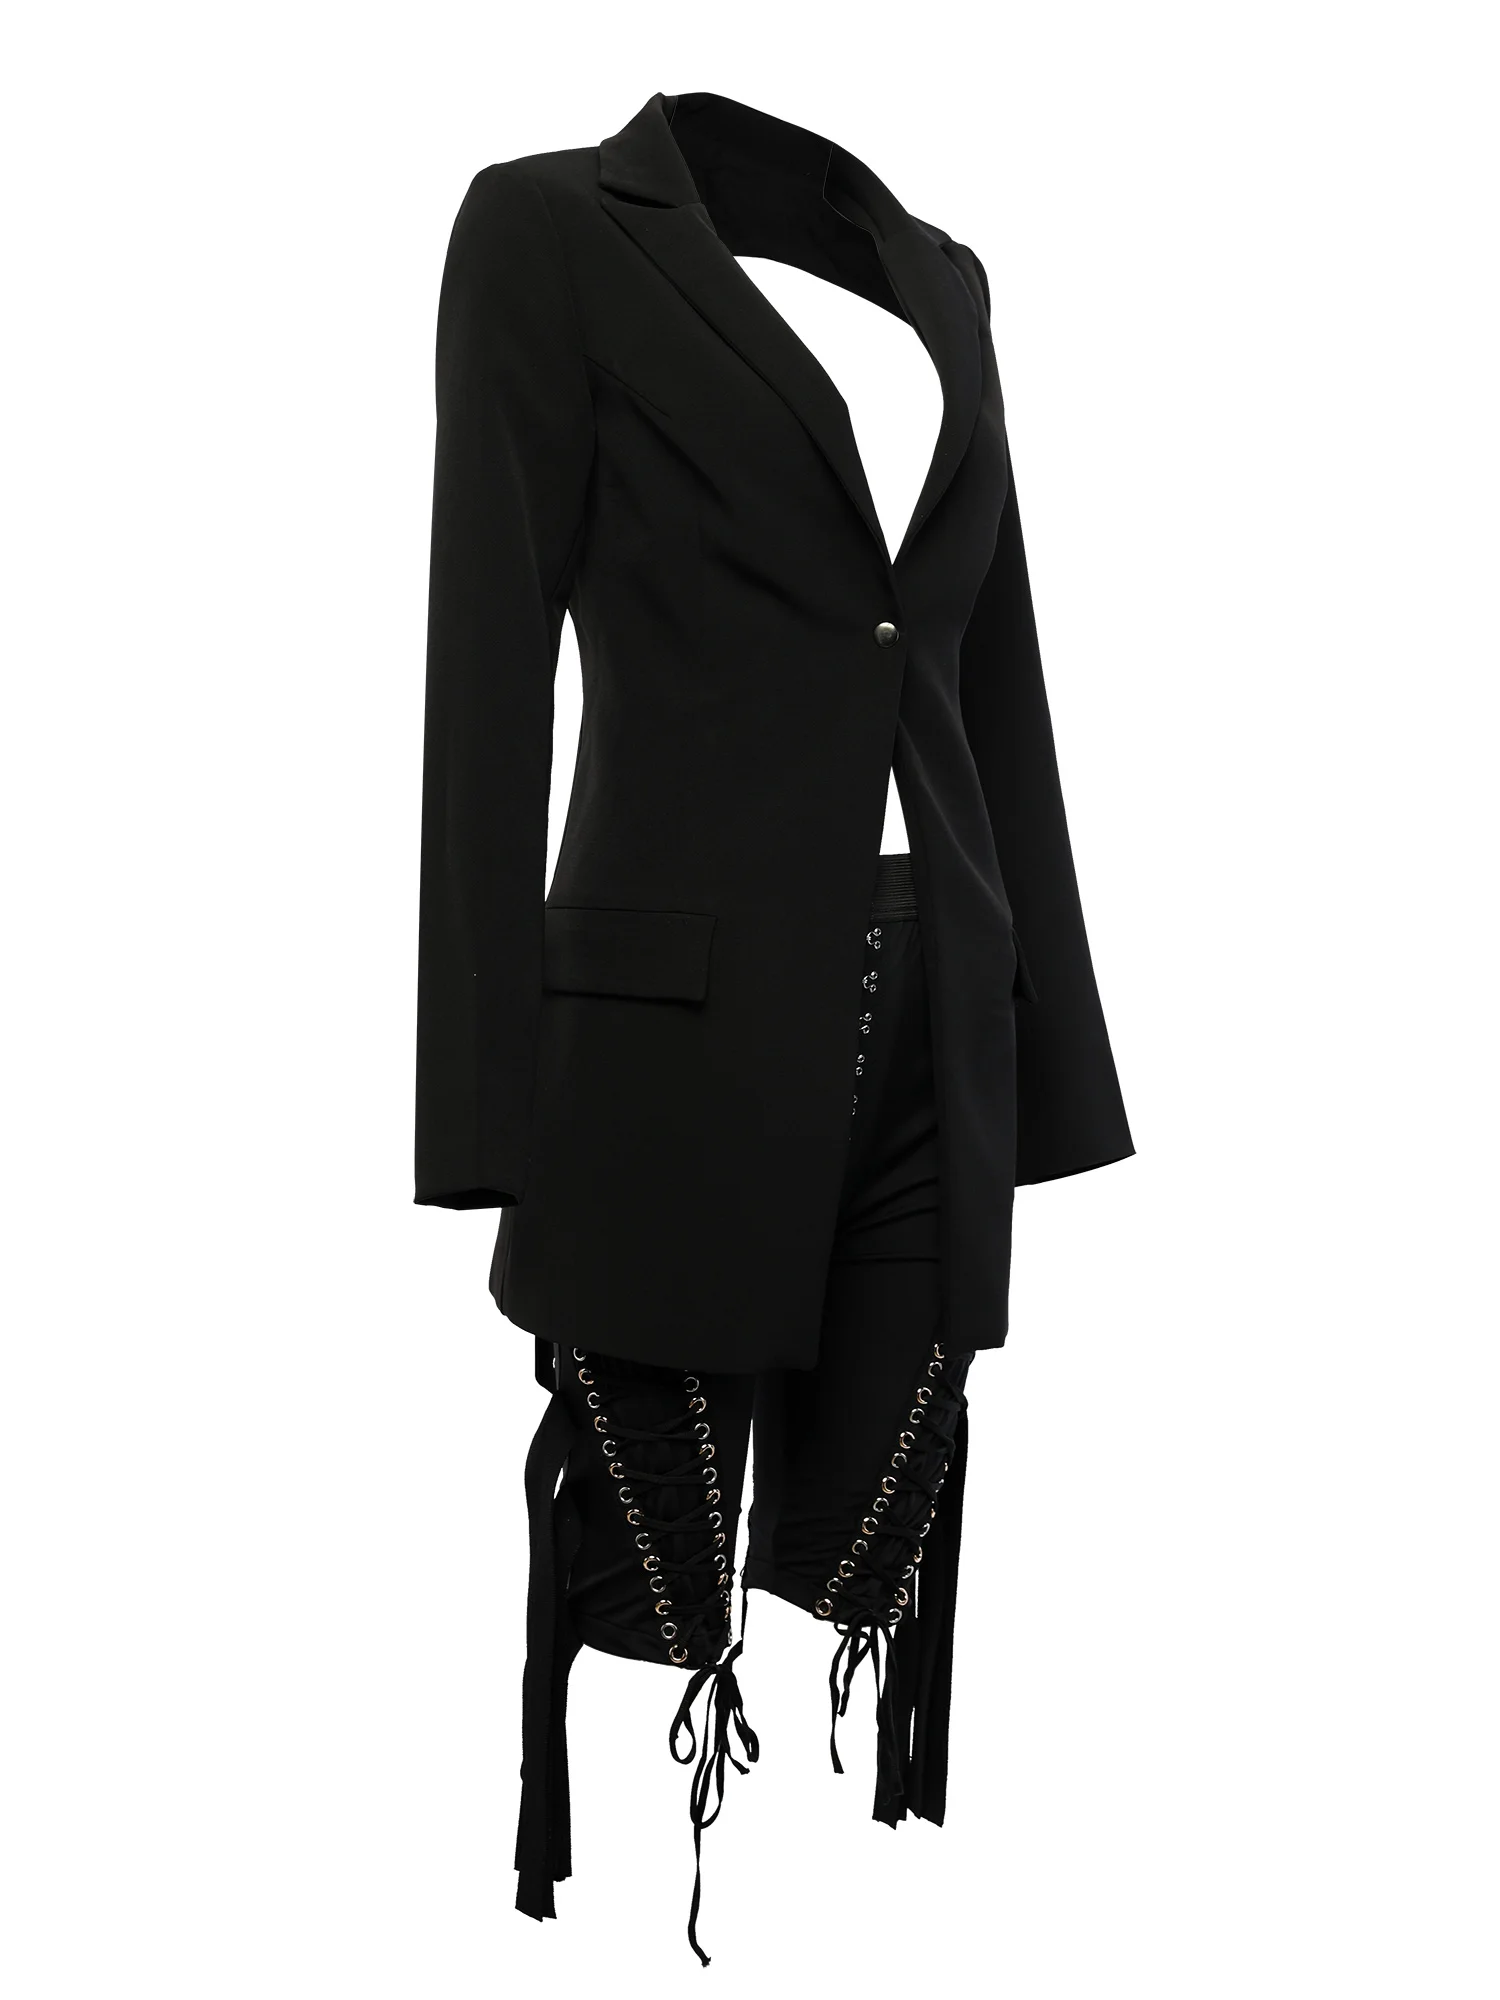 Halinfer 2019 новый летний женский костюм сексуальный облегающий костюм с v-образным вырезом облегающие шорты бандажный костюм элегантные